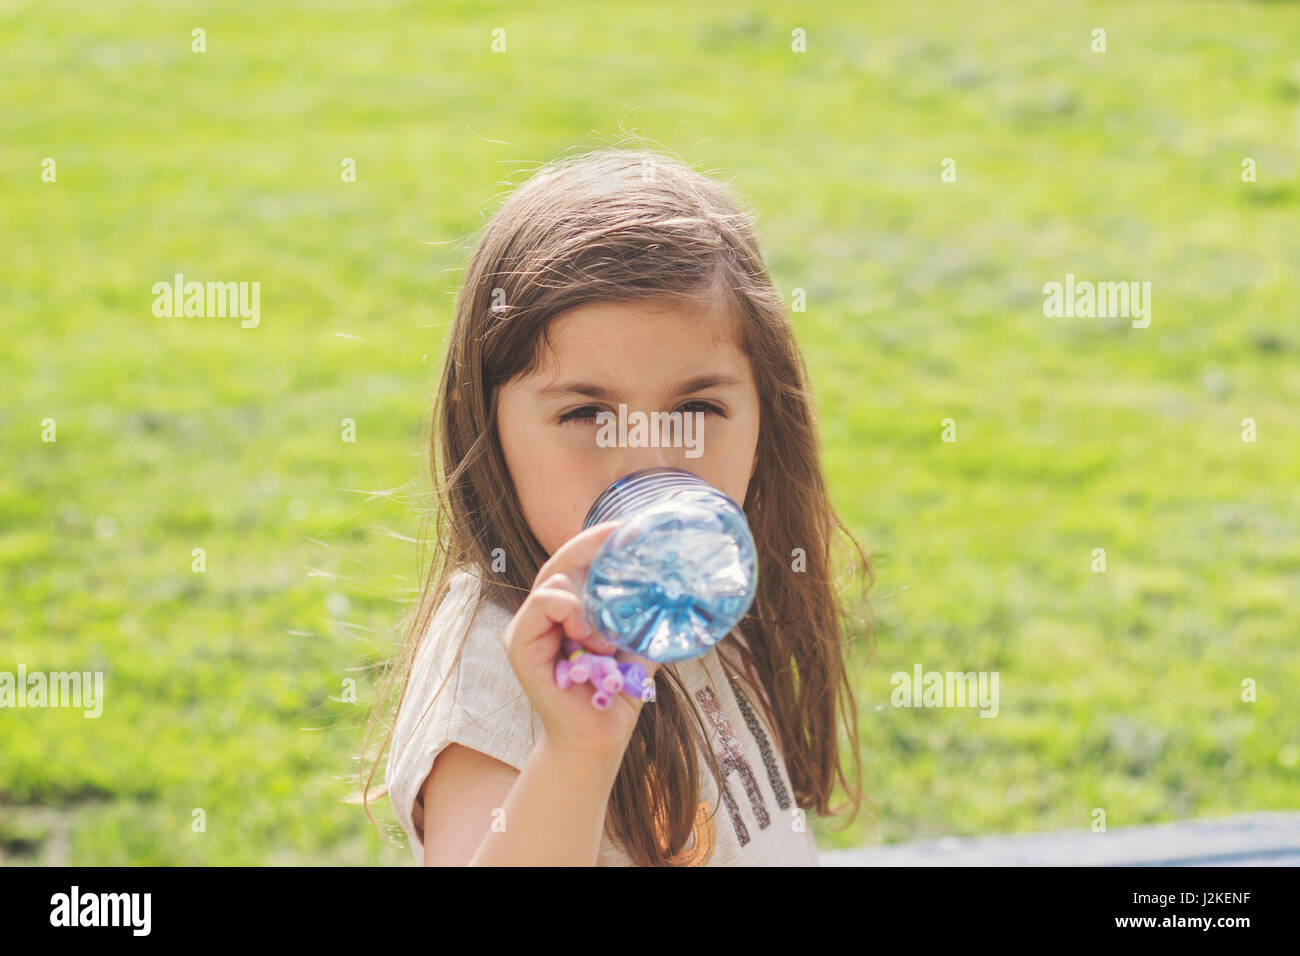 Petite fille boire l'eau de bouteille en plastique Banque D'Images